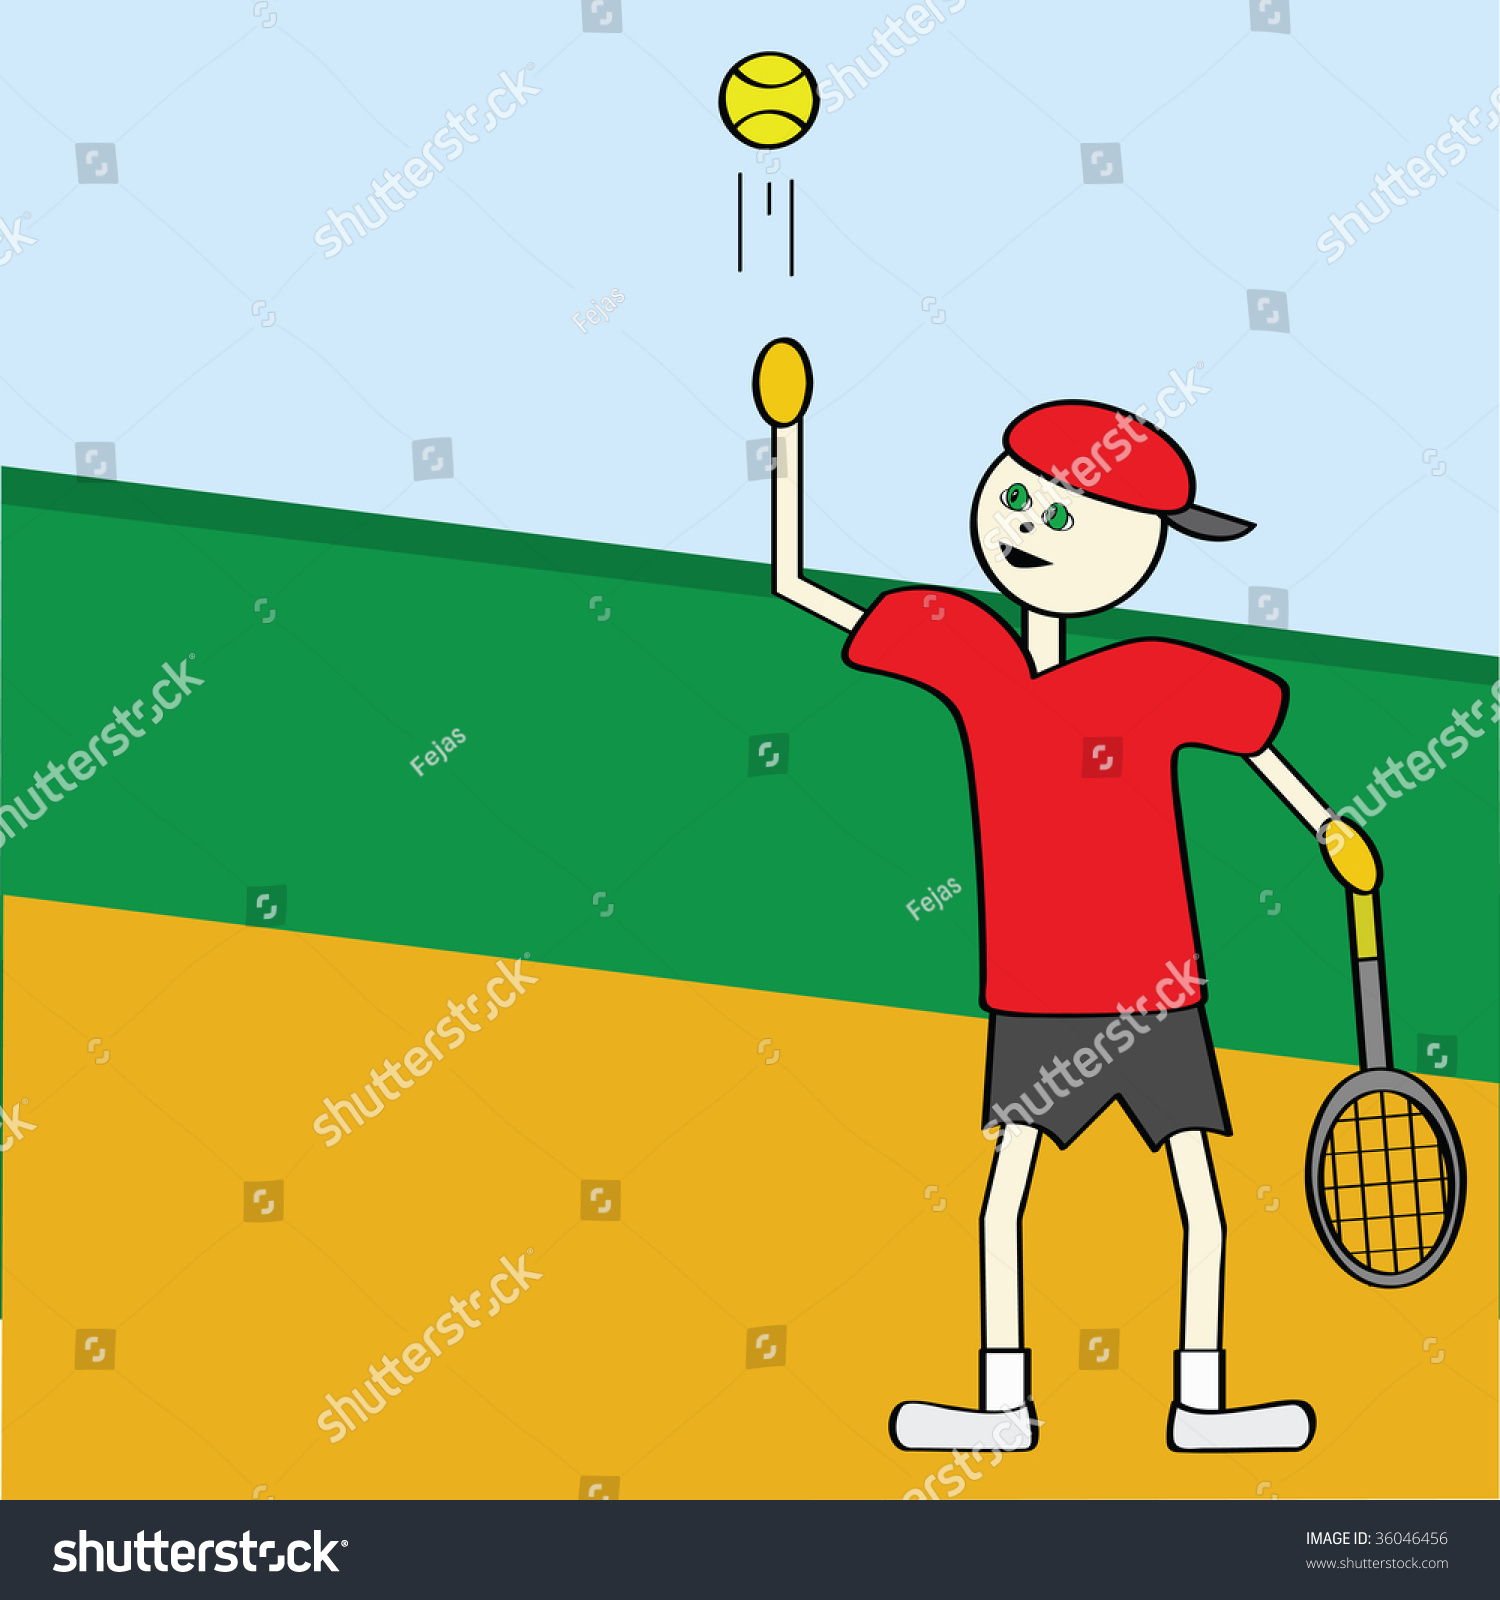 Cartoon Jpeg Illustration Of A Boy Playing Tennis - 36046456 : Shutterstock